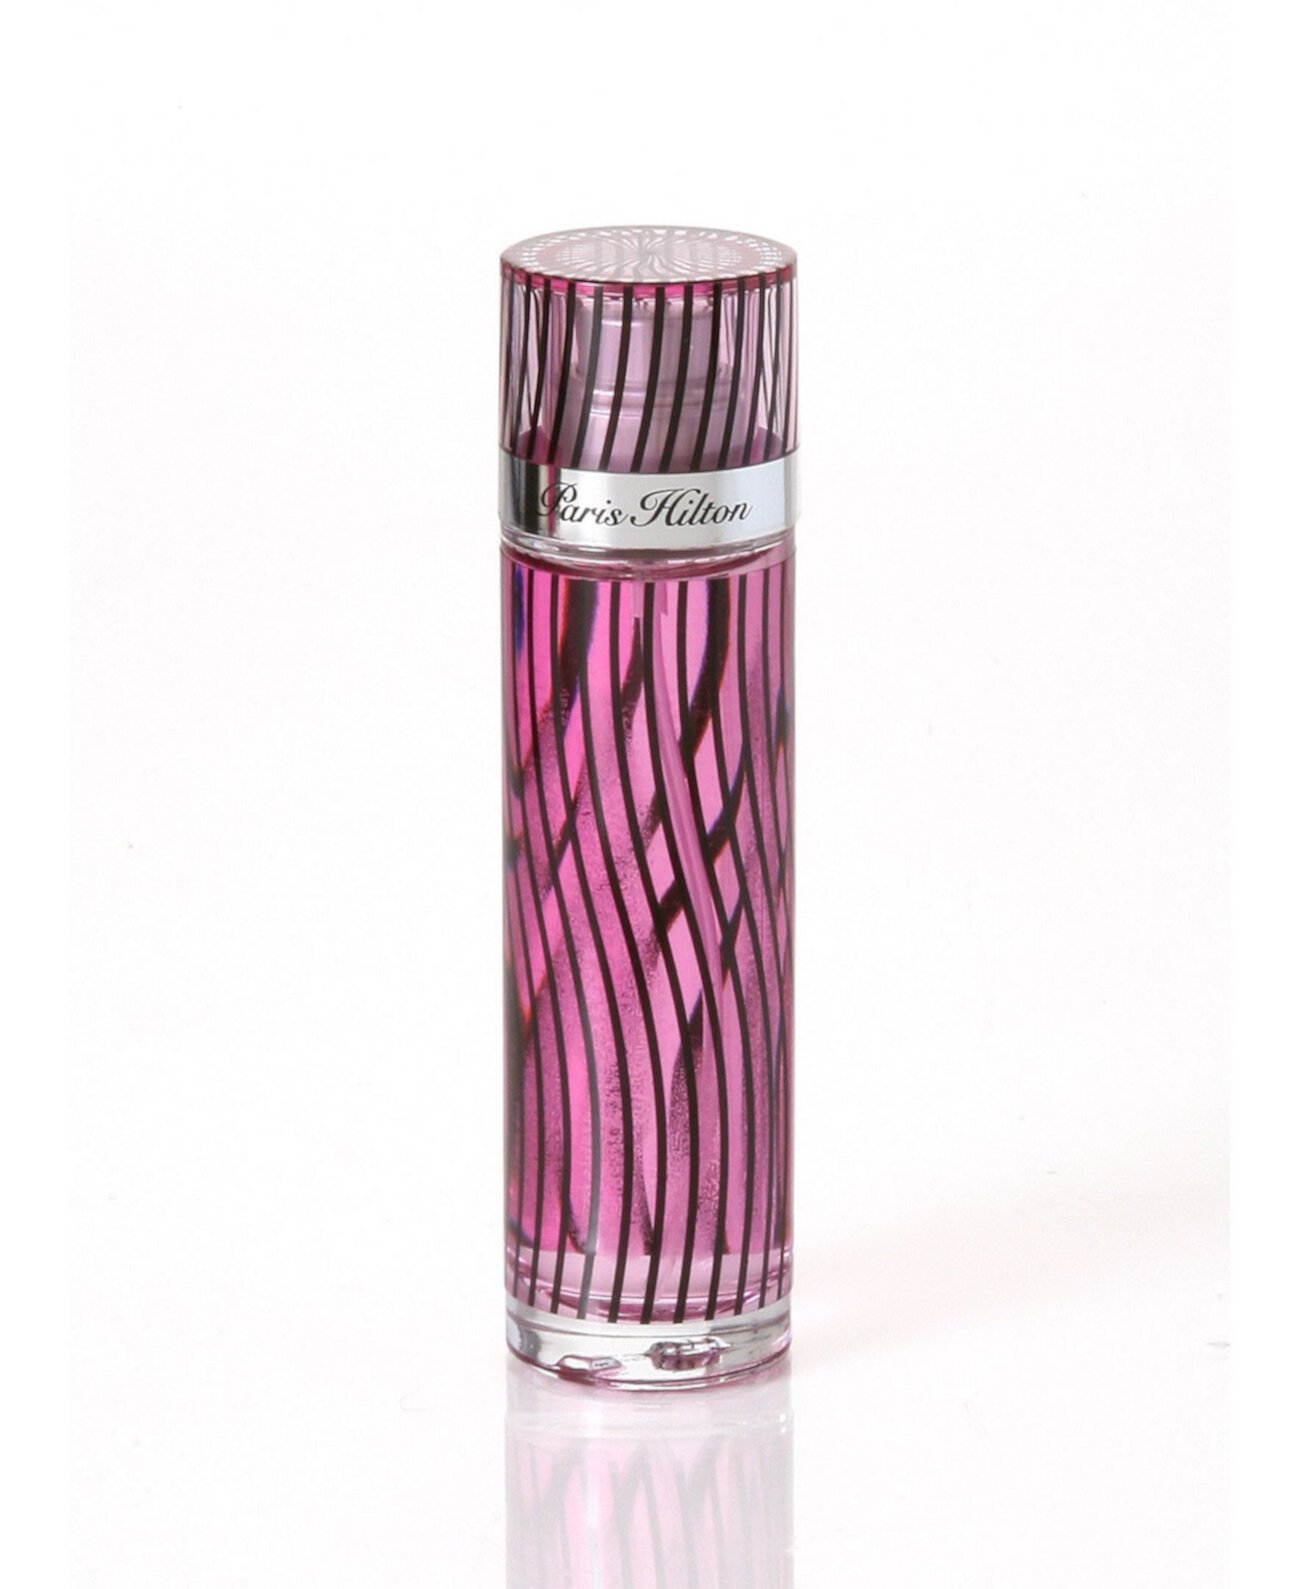 Женская классическая парфюмированная вода, 1 эт. Унция Paris Hilton